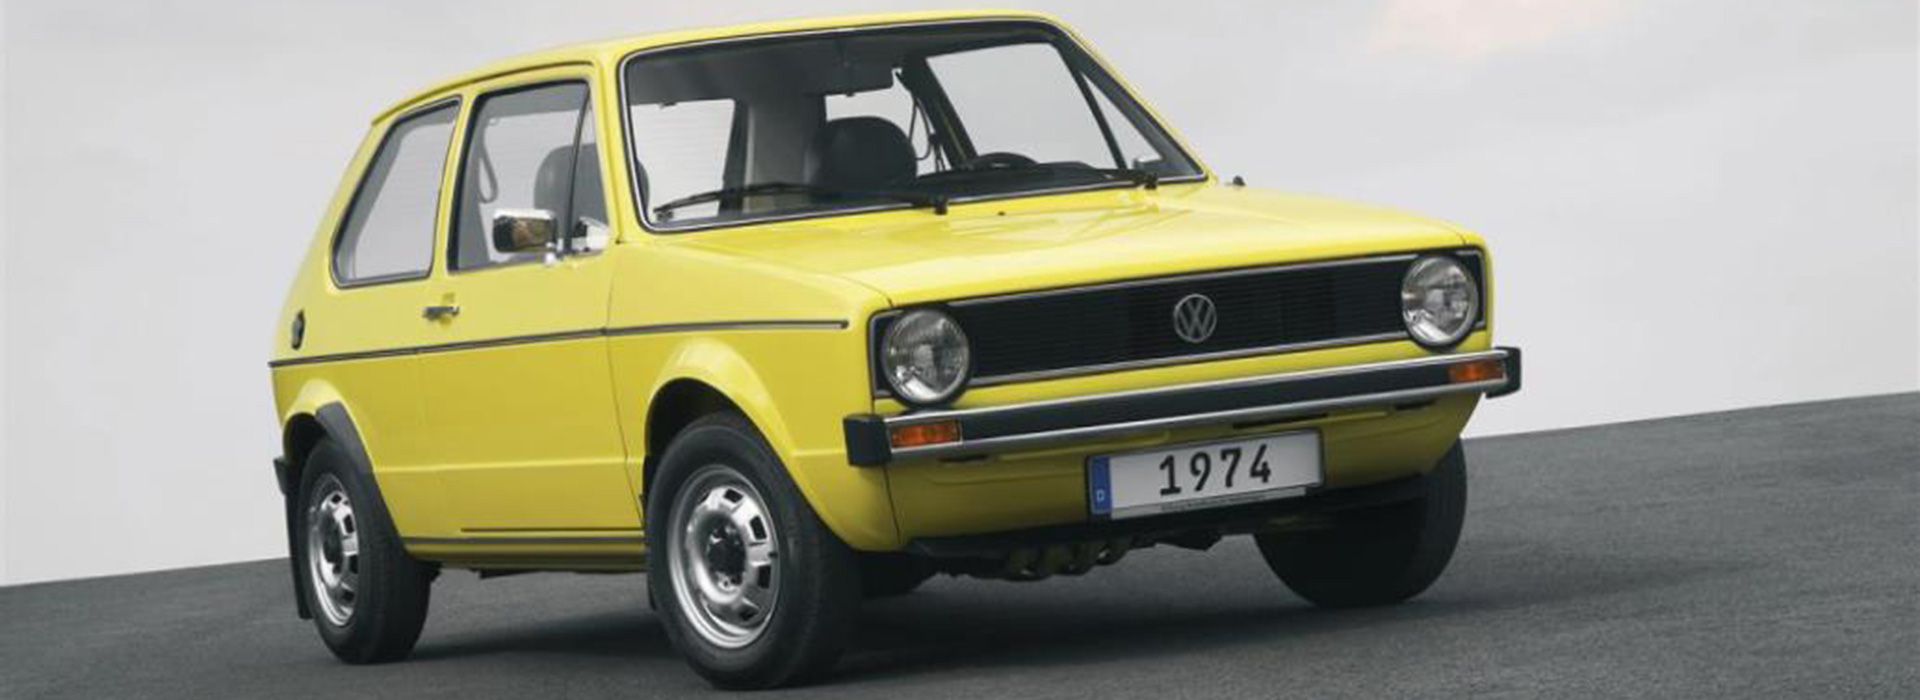 Volkswagen Golf, i 45 anni di un’icona.